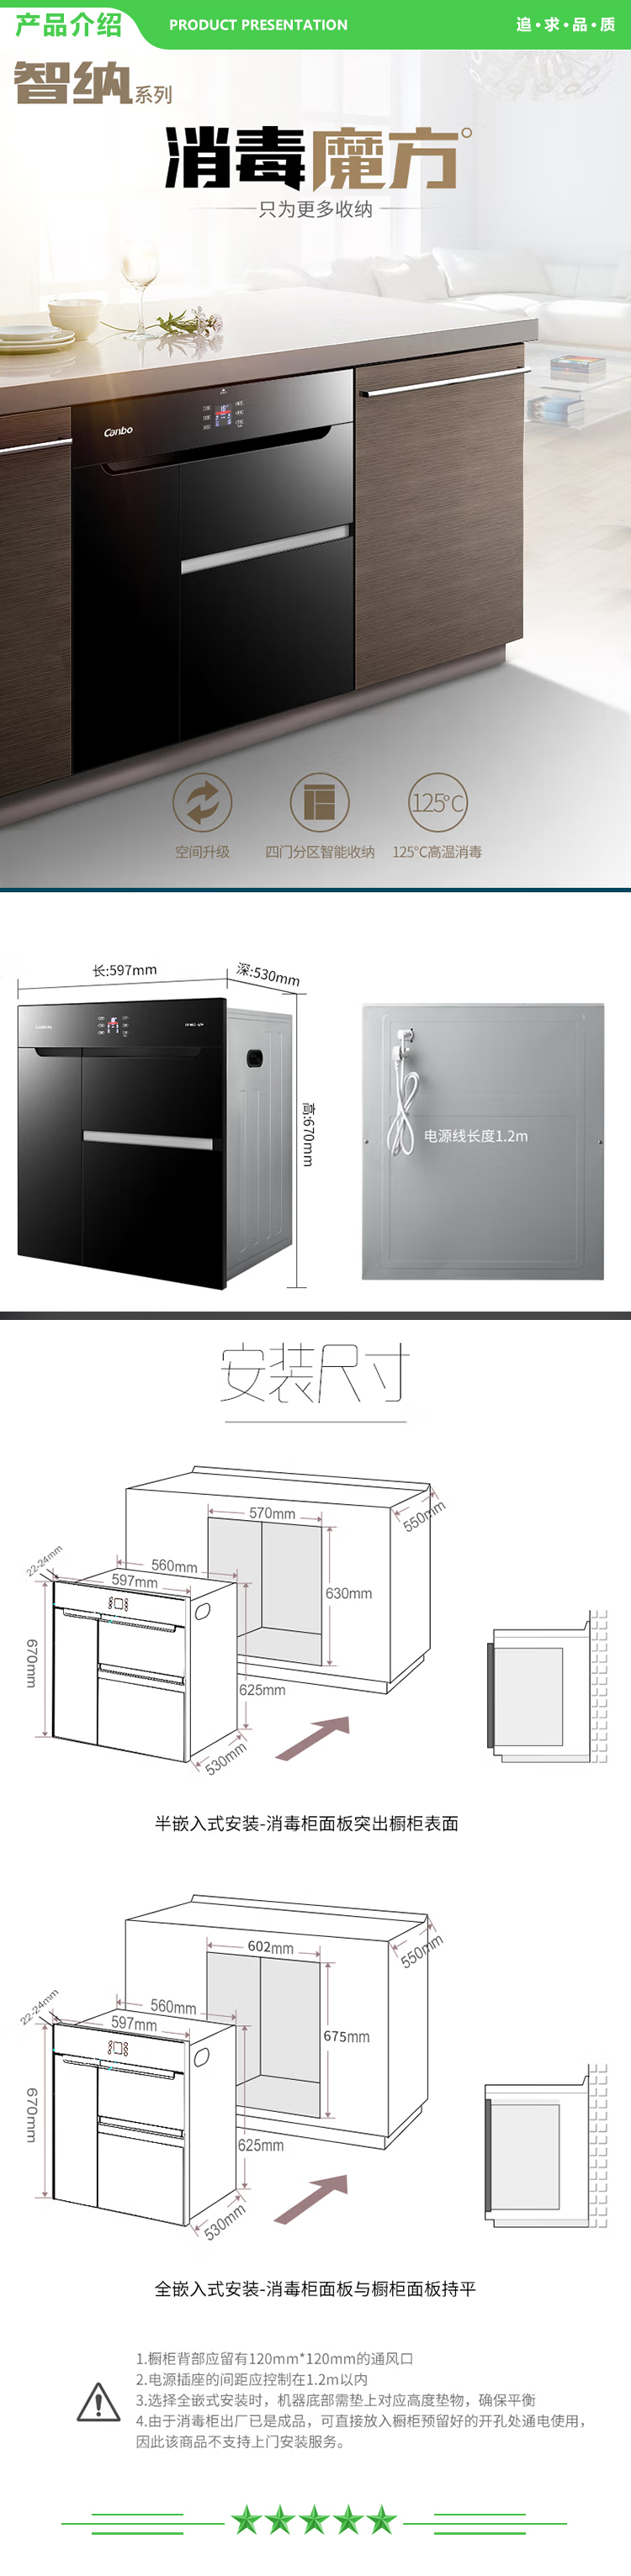 康宝 Canbo XDZ110-E11 消毒柜家用 不锈钢大容量 四门 嵌入式消毒碗柜 二星级厨房高温餐具碗筷保洁柜 .jpg